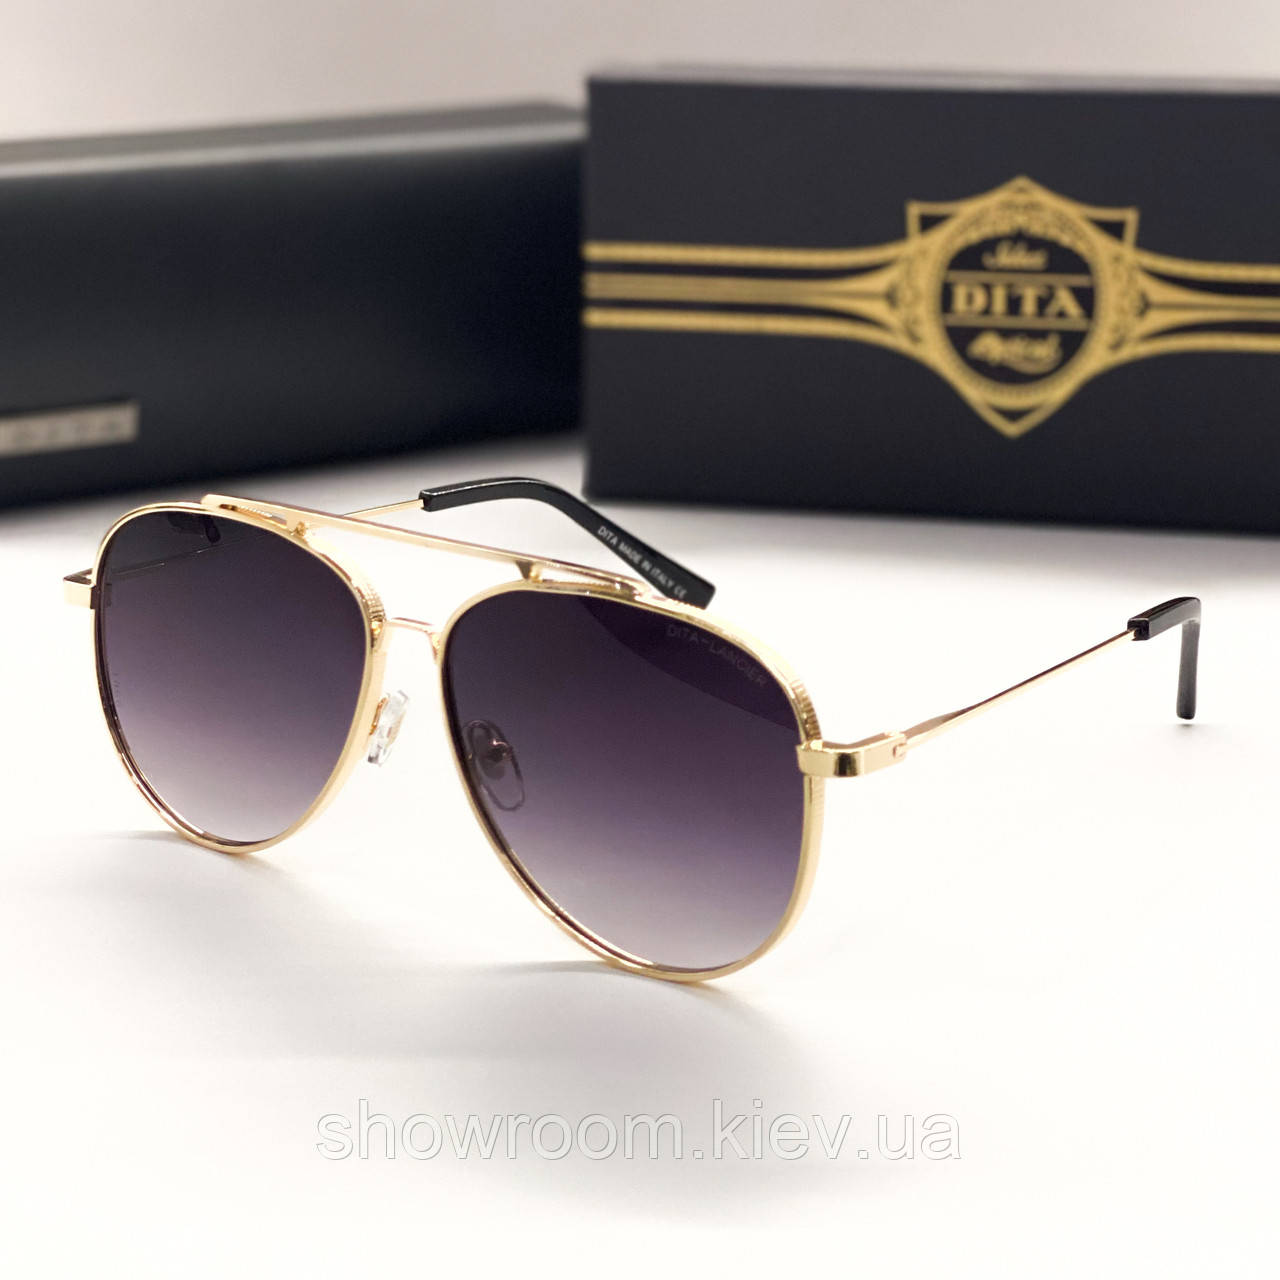 Жіночі сонцезахисні окуляри авіатори Dita (1099) gold